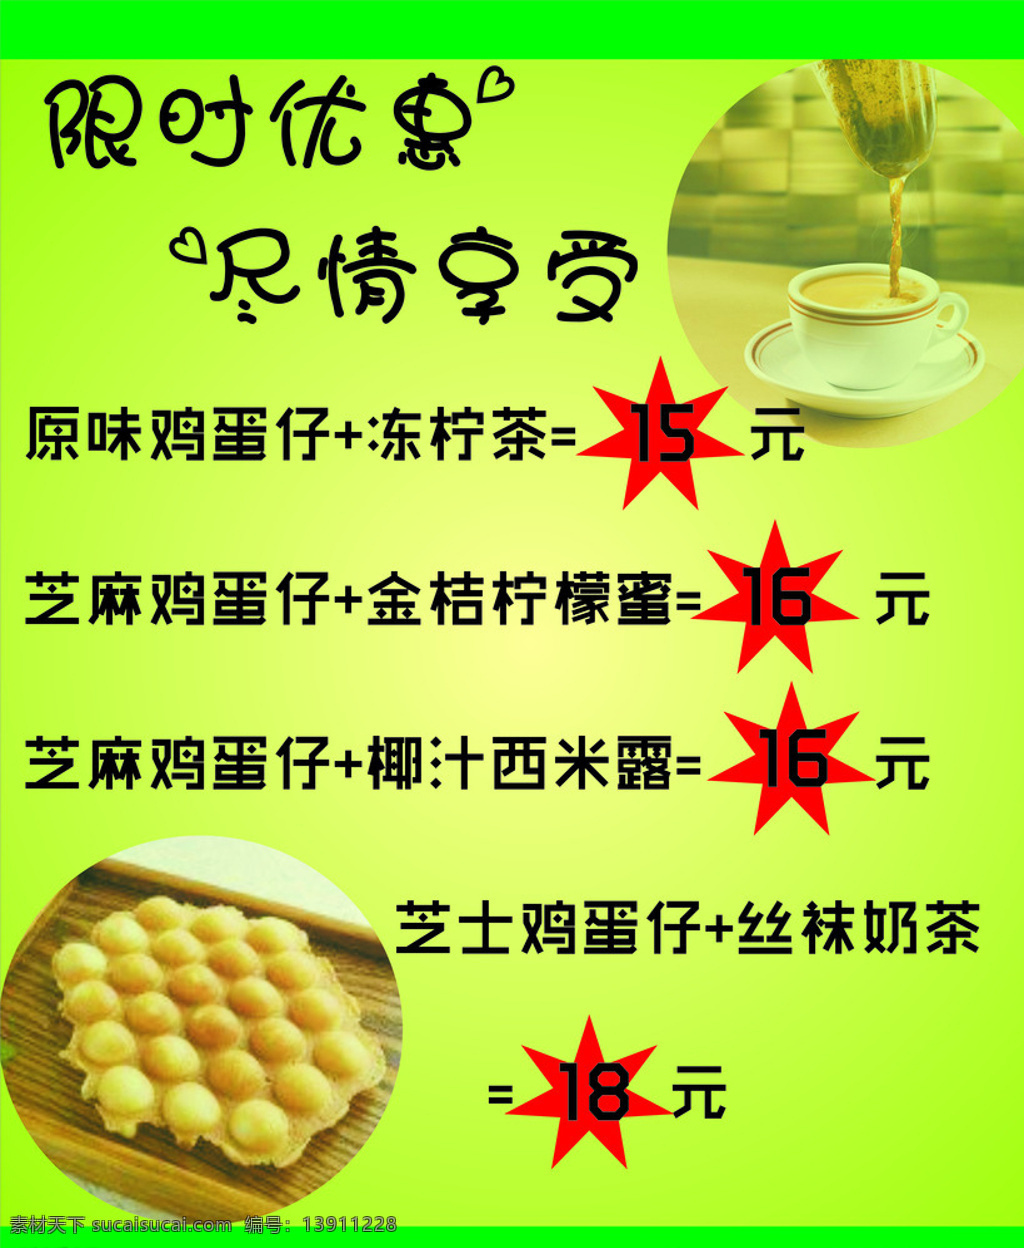 甜品限时优惠 甜品 鸡蛋仔 奶茶 限时优惠 海报 dm宣传单 绿色